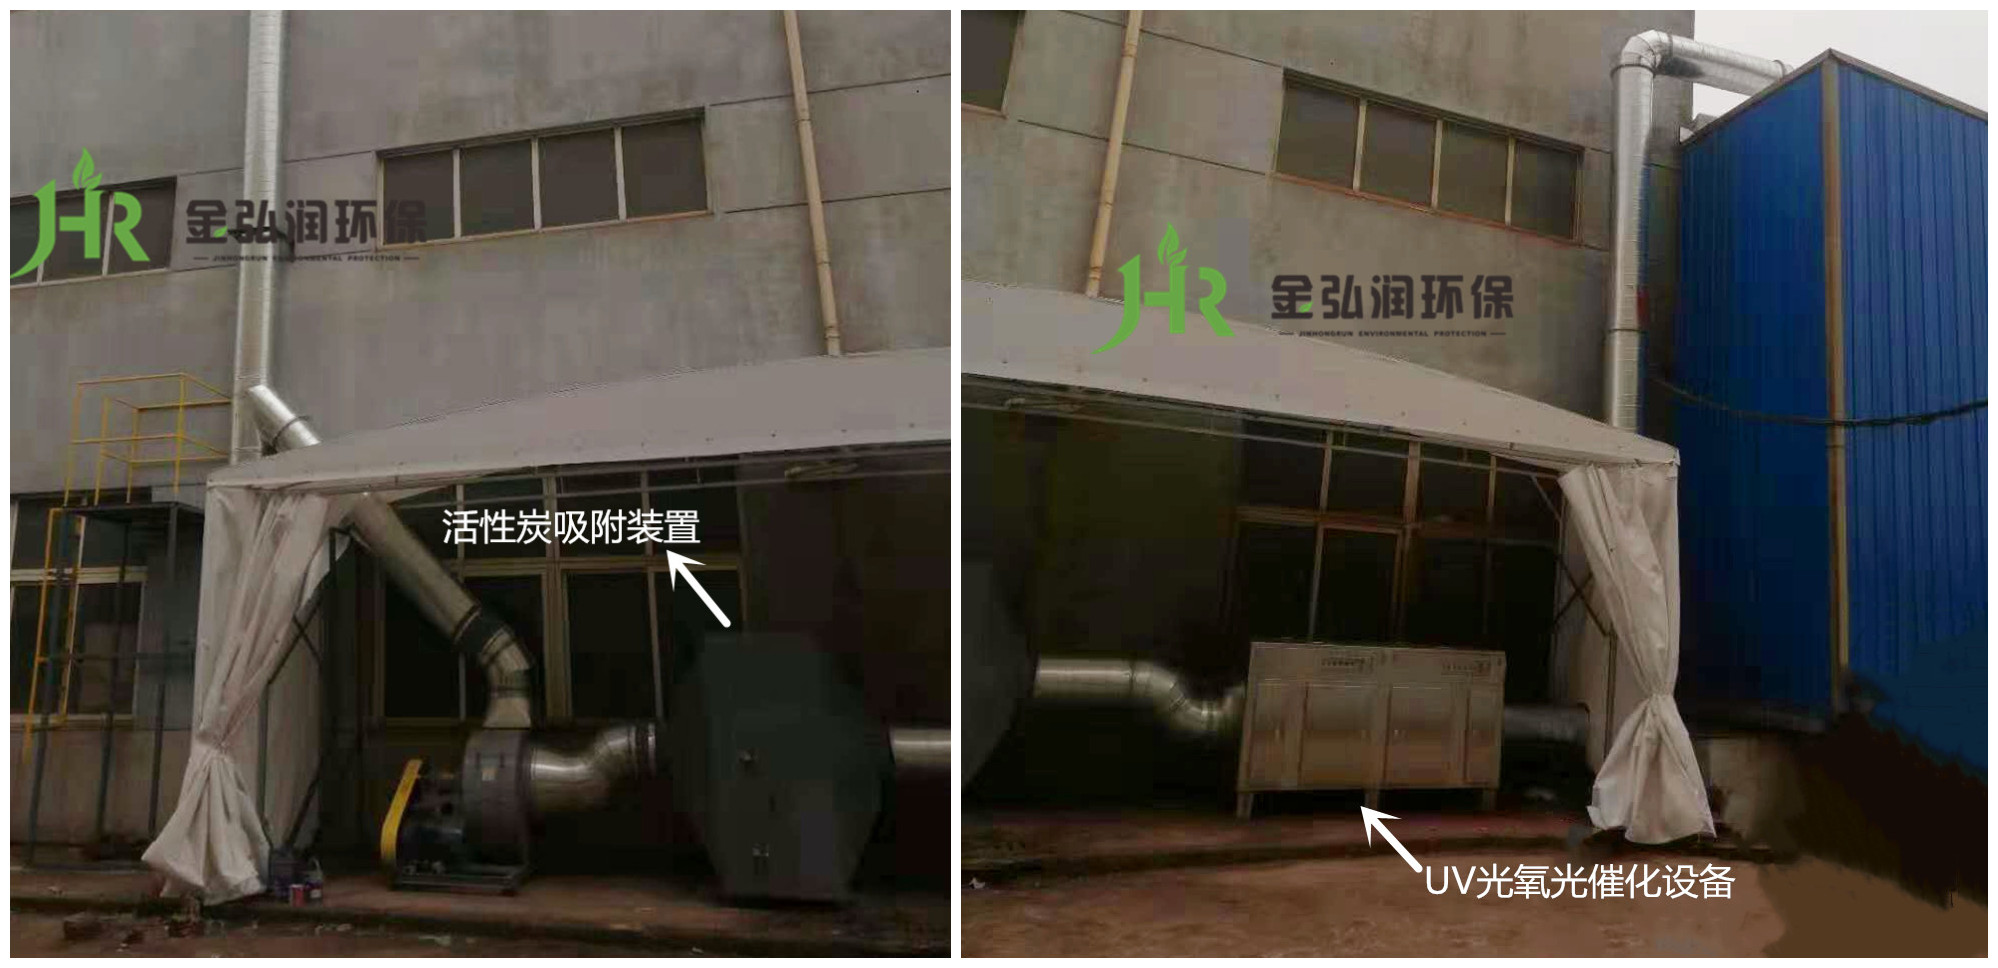 上海宝山某设备制造有限公司废气处理案例